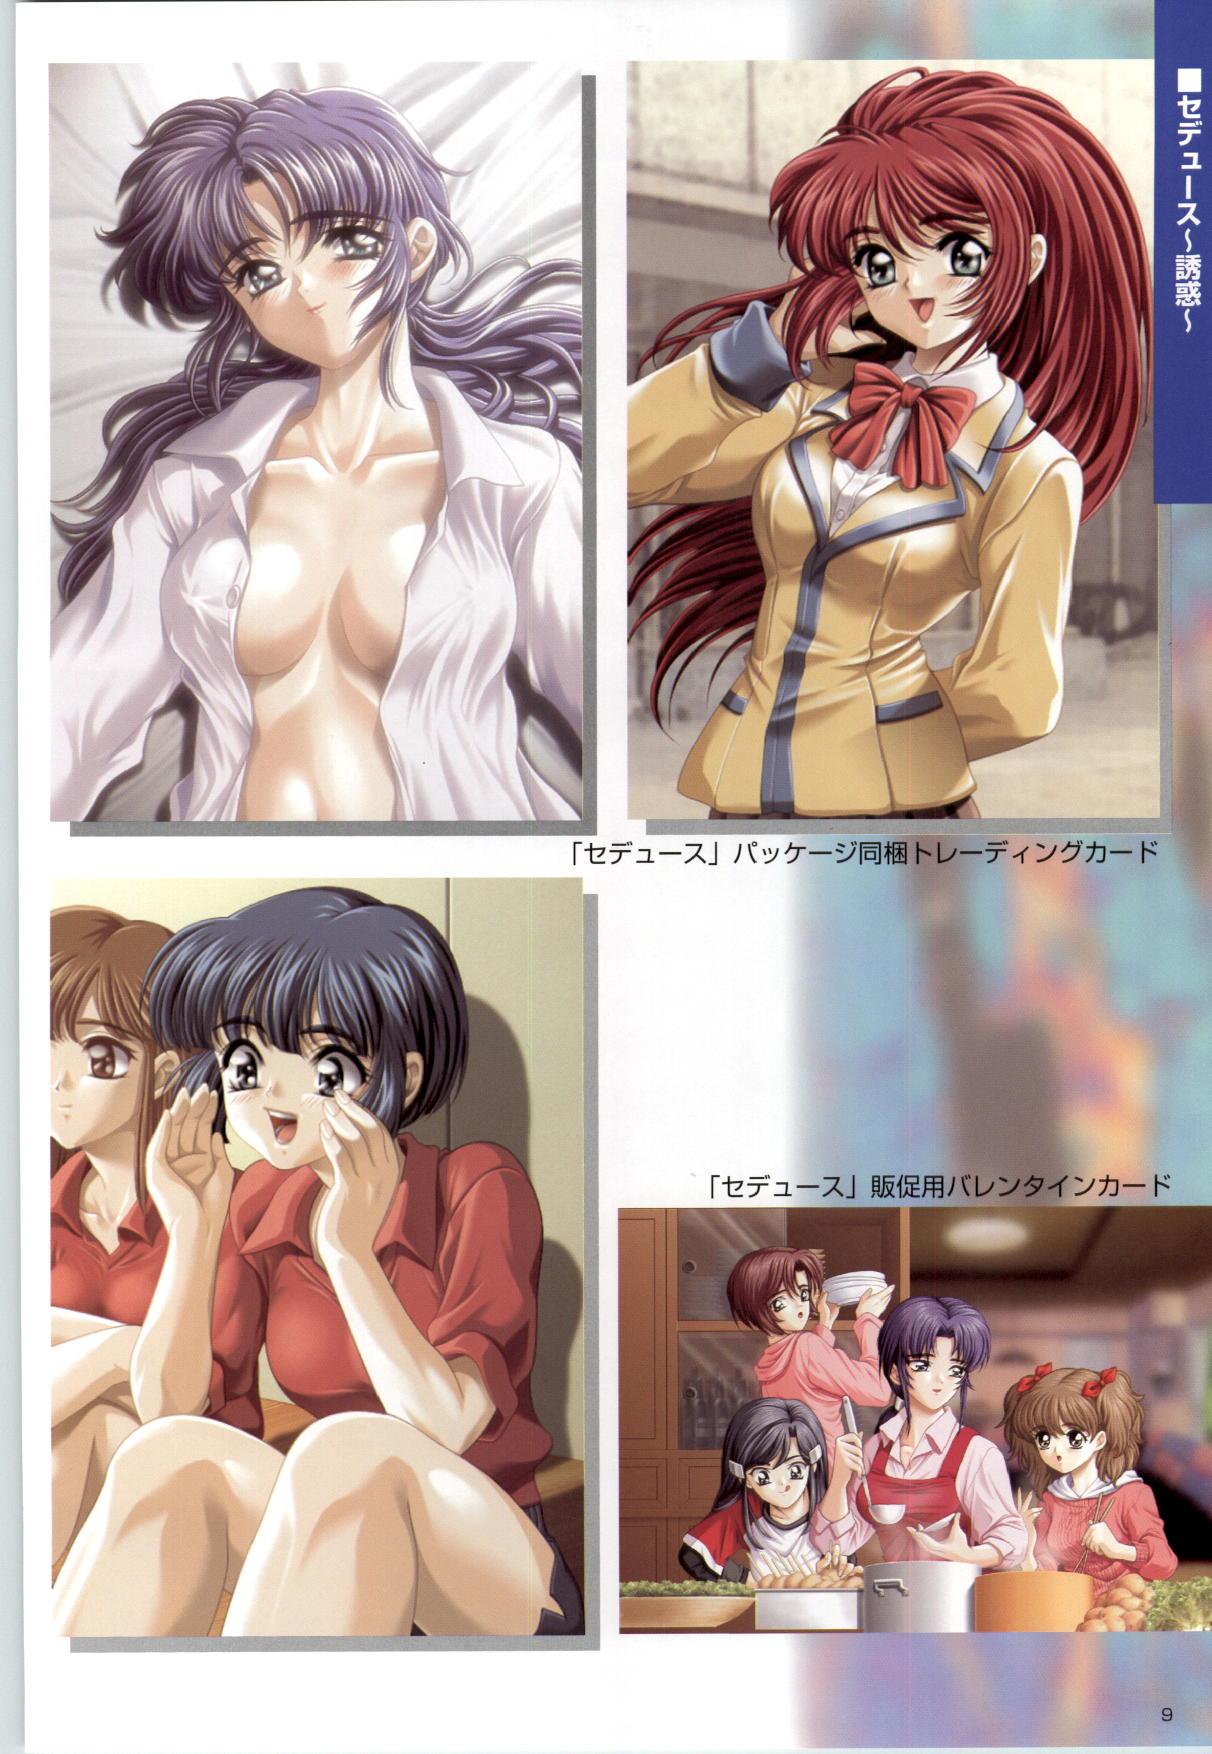 [Kinmedai Pink] ACTRESS Collection Kizuna + Seduce ~Yuuwaku~ + Hoshi no Pierce Computer Graphics & Original Pictures 9